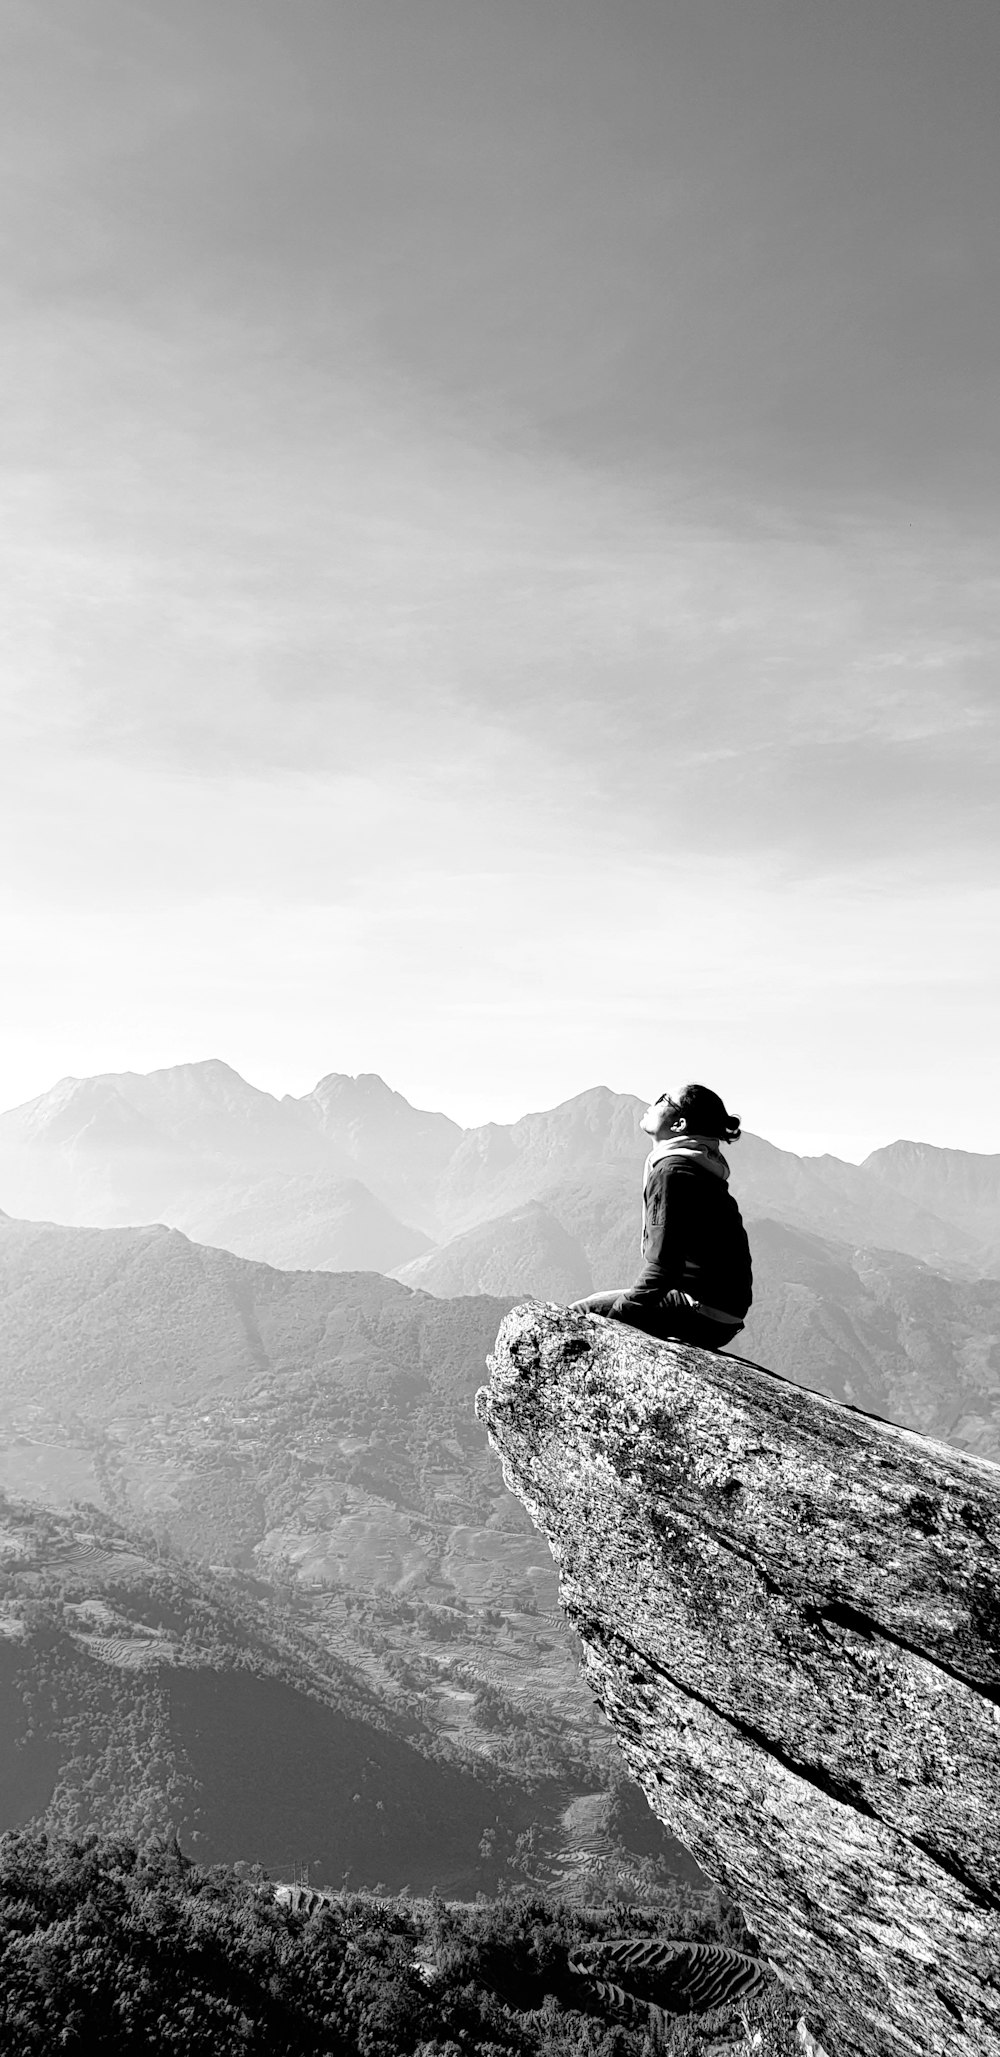 man in black jacket sitting on rock mountain during daytime